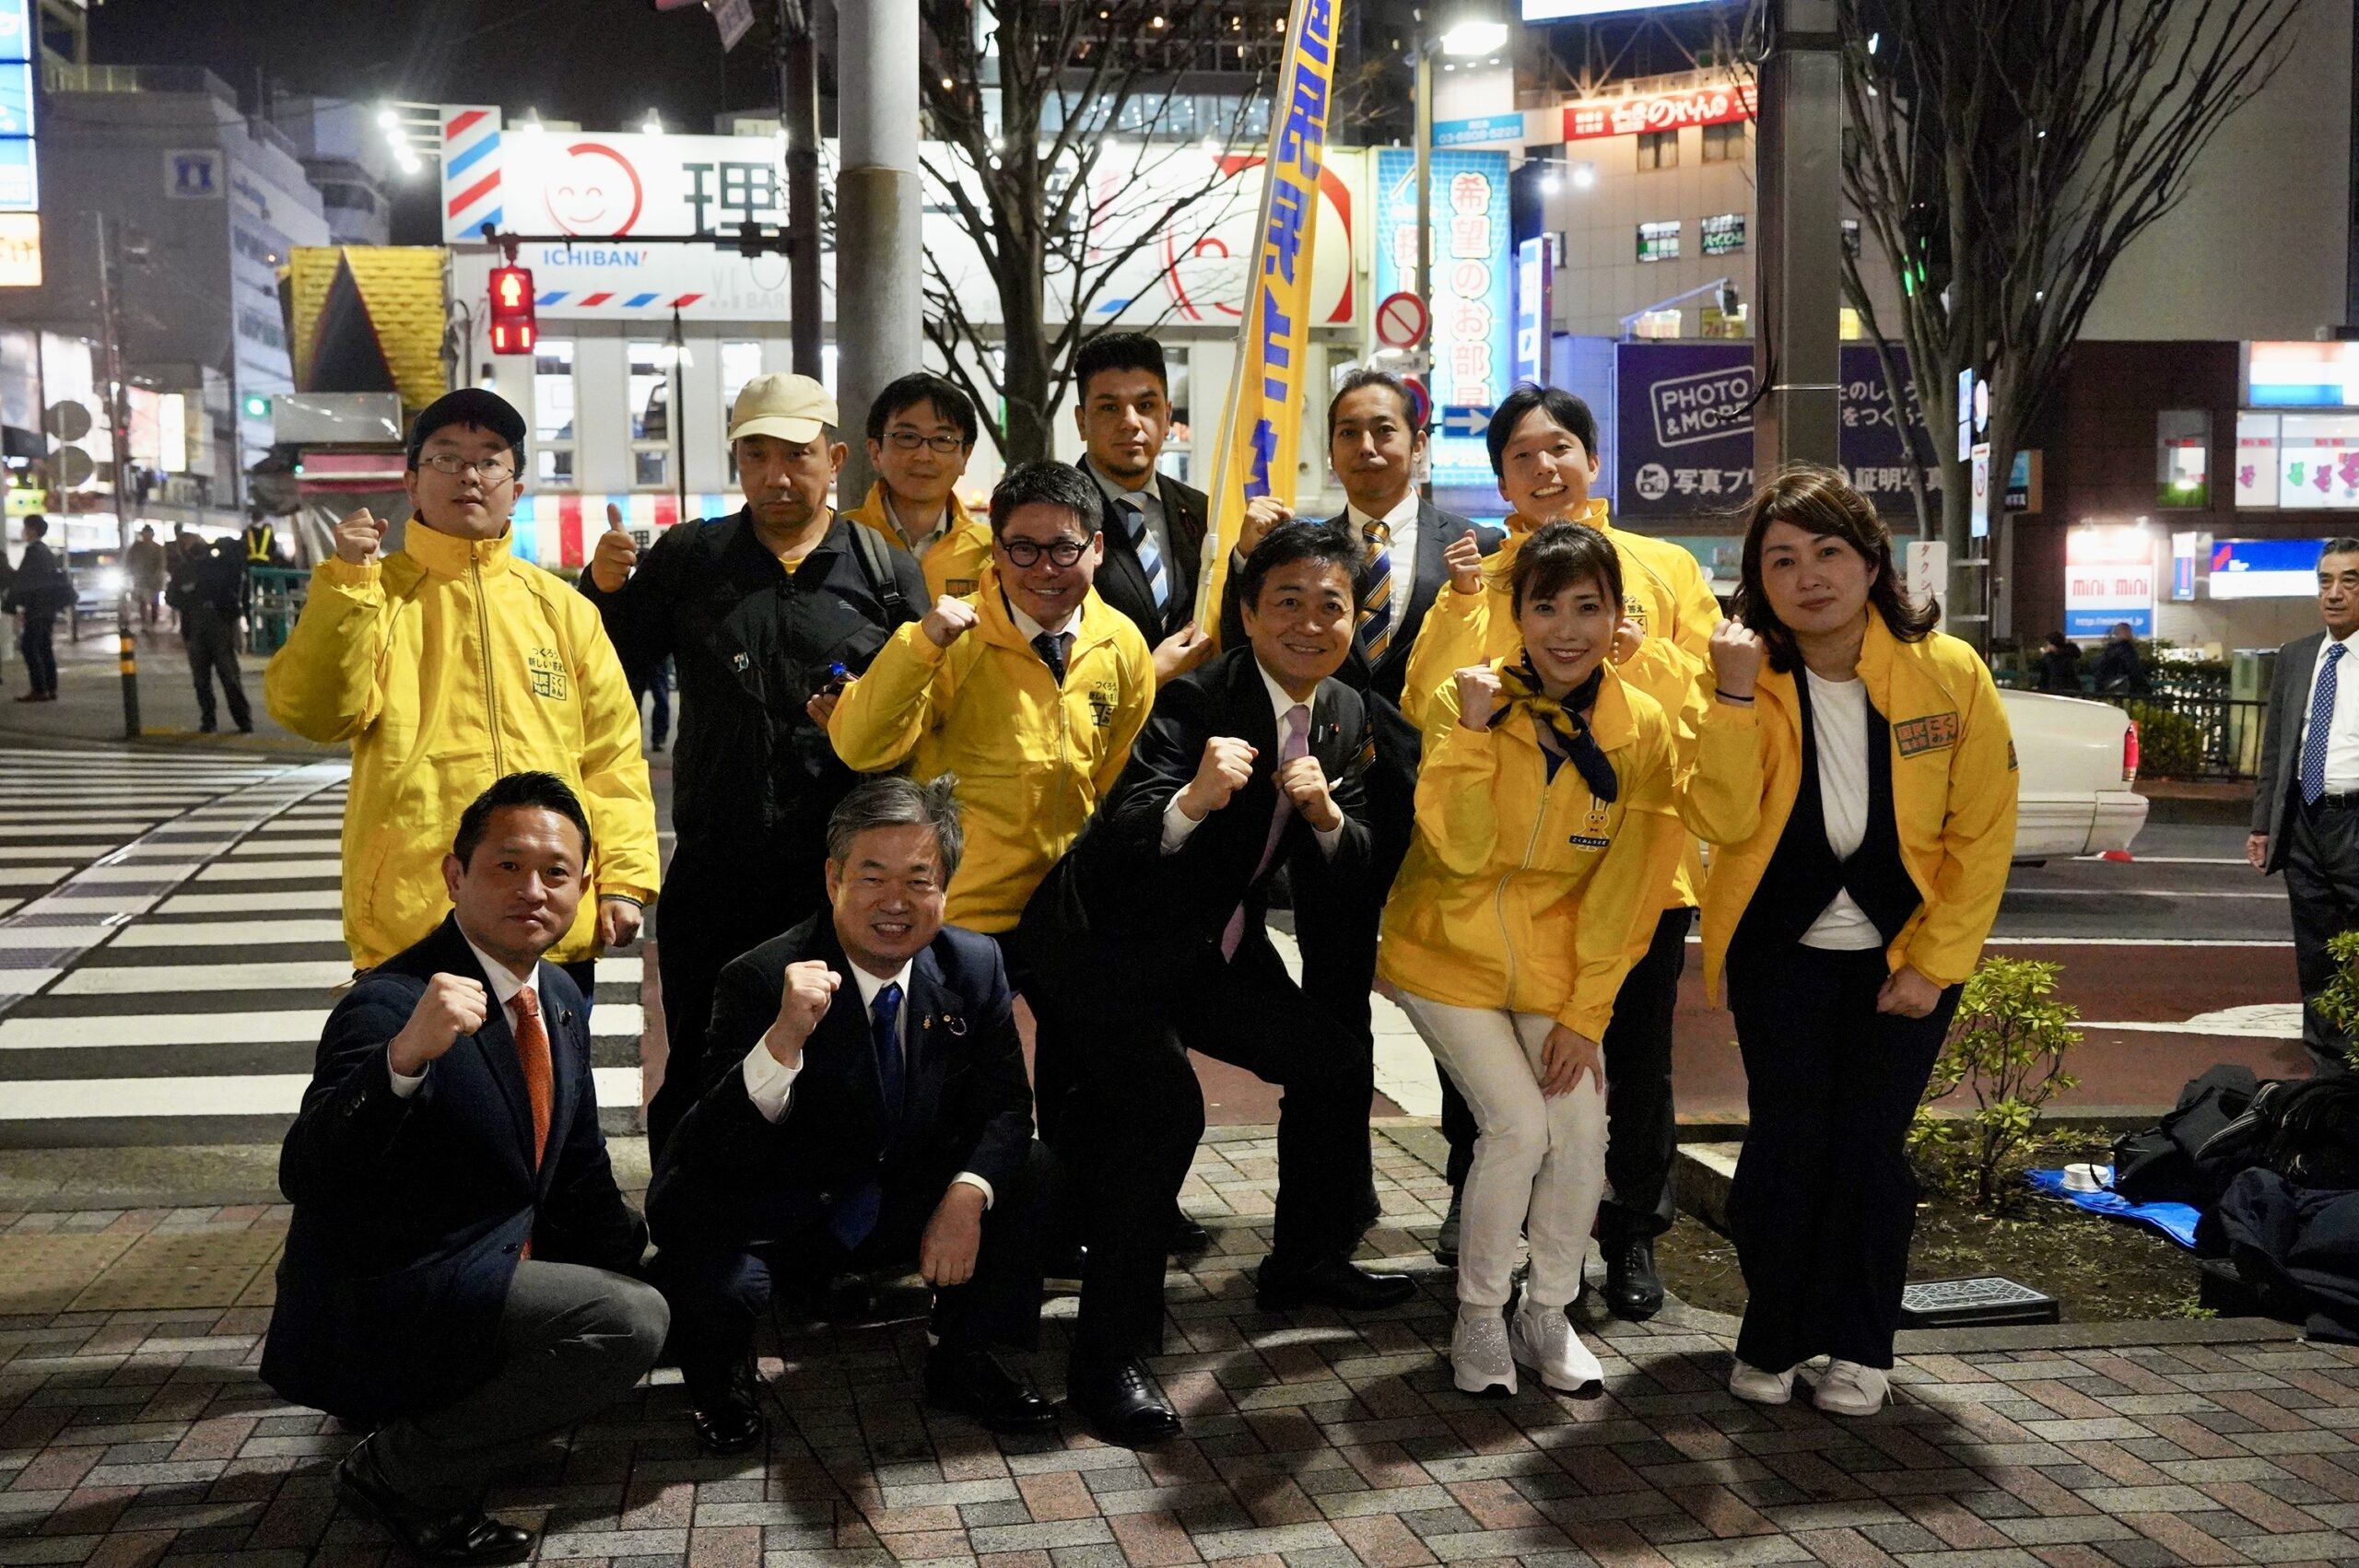 【東京】「『政治とカネ』の問題は民主主義の根幹を揺るがす」玉木代表が大井町駅で街頭演説